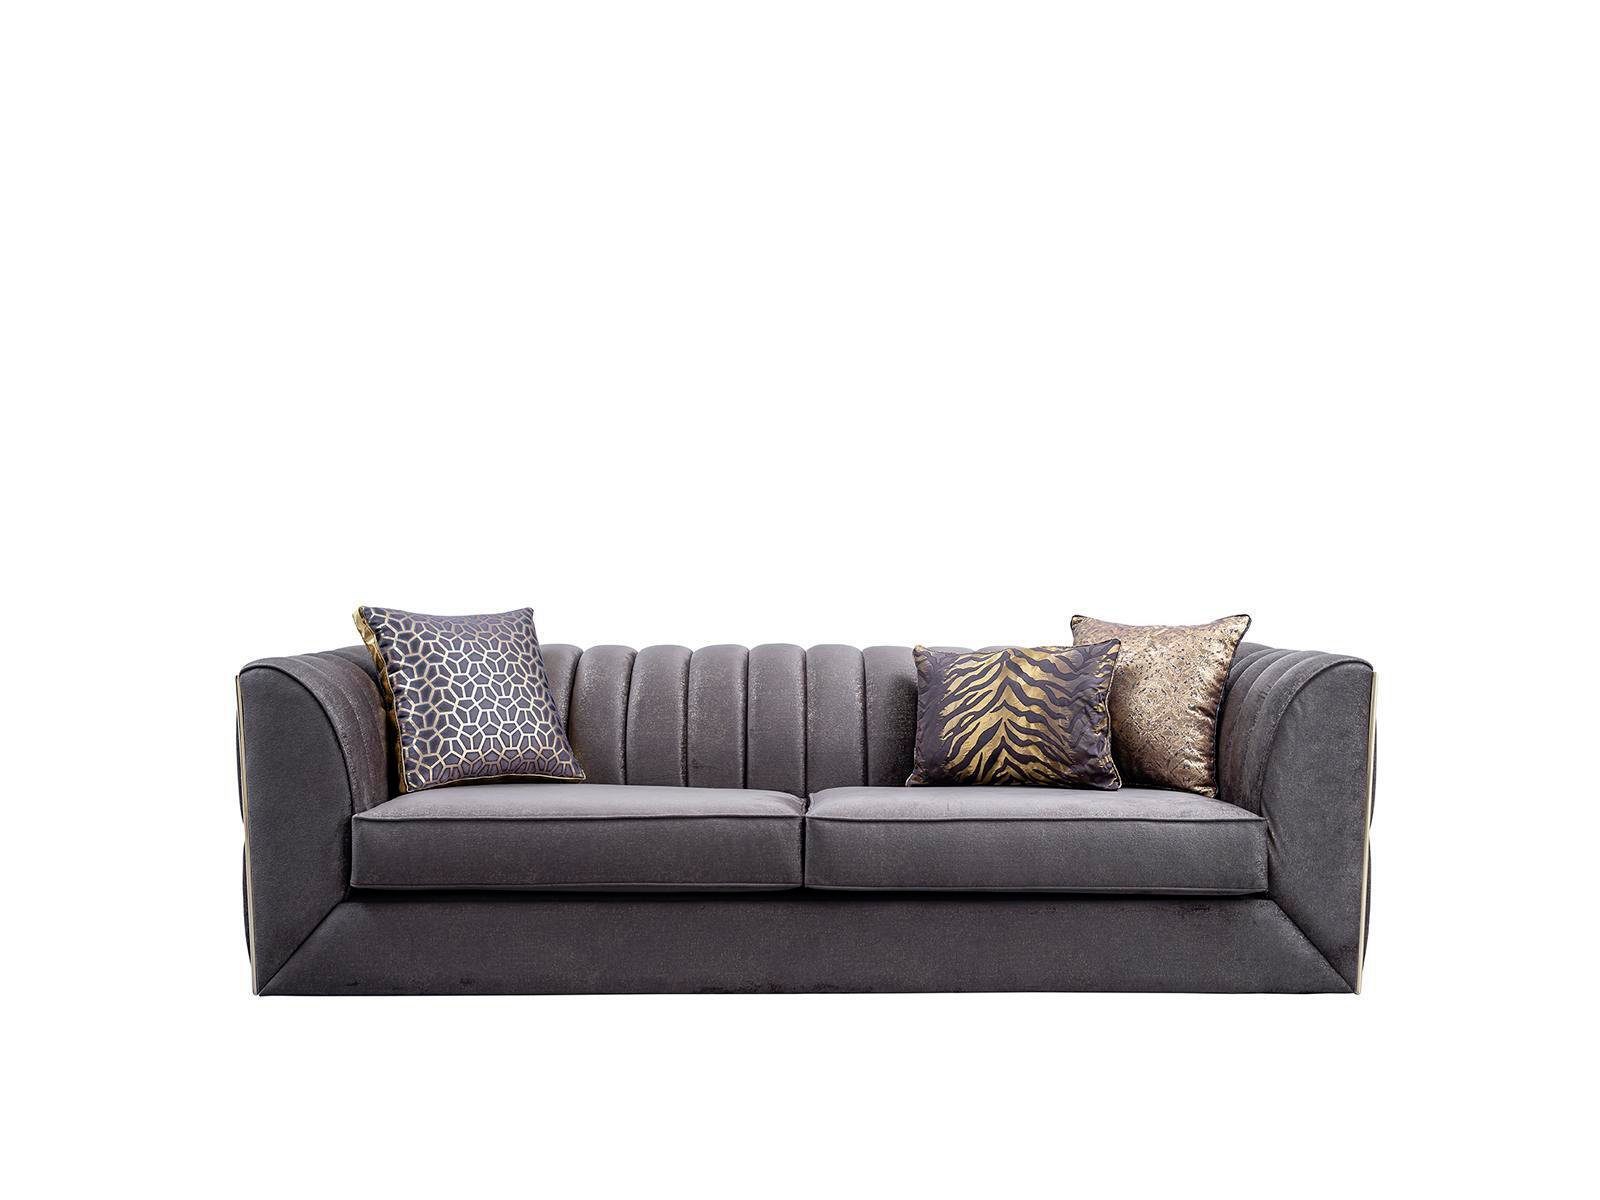 JVmoebel Sofa Luxuriöser Dreisitzer Wohnzimmermöbel Moderne Couch Textilsofas, 1 Teile, Made in Europa